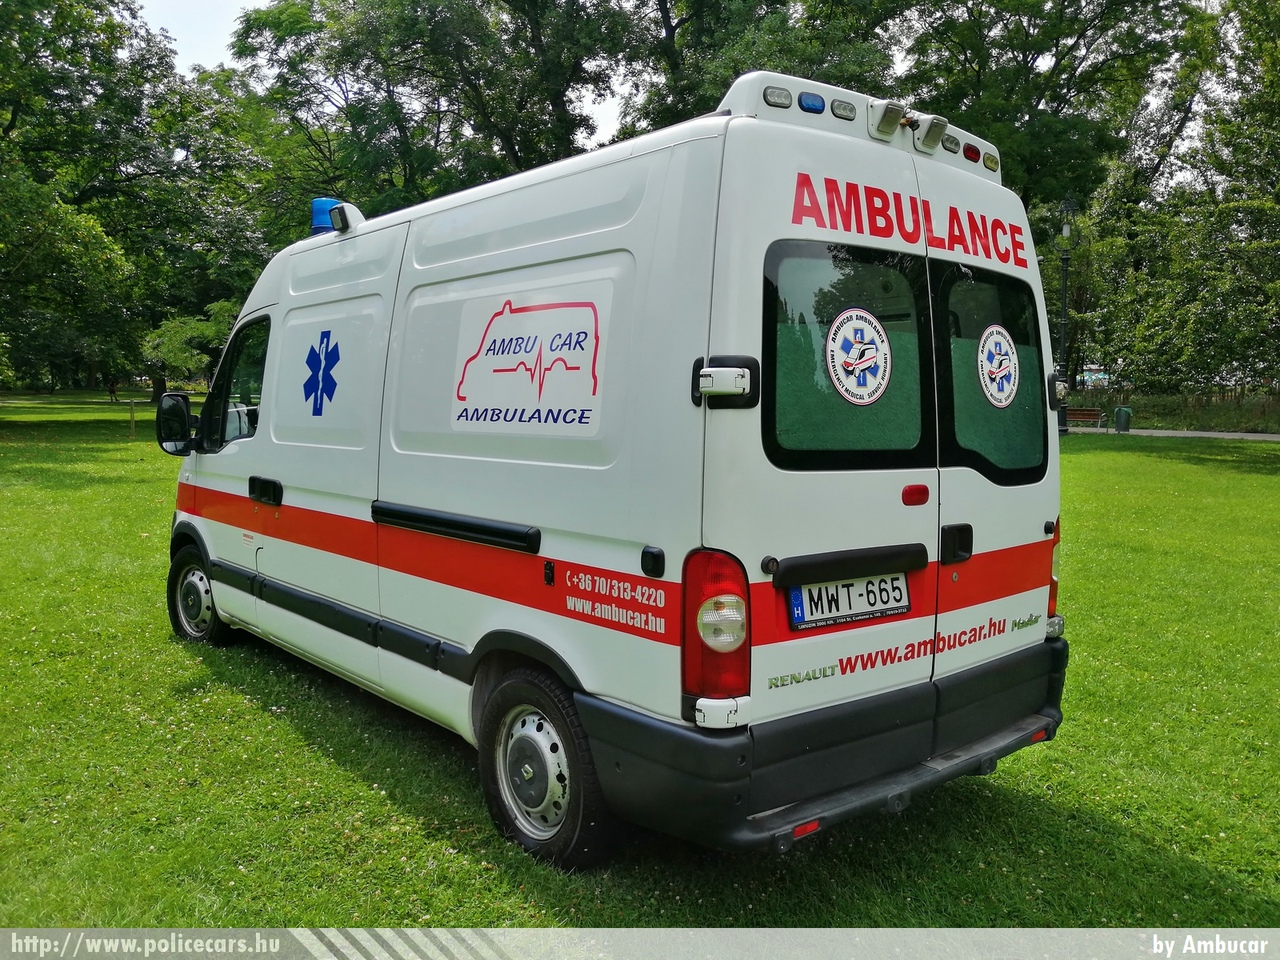 Renault Master, Ambucar Mentõszolgálat, fotó: Ambucar
Keywords: mentő mentőautó magyar Magyarország hungarian Hungary ambulance MWT-665